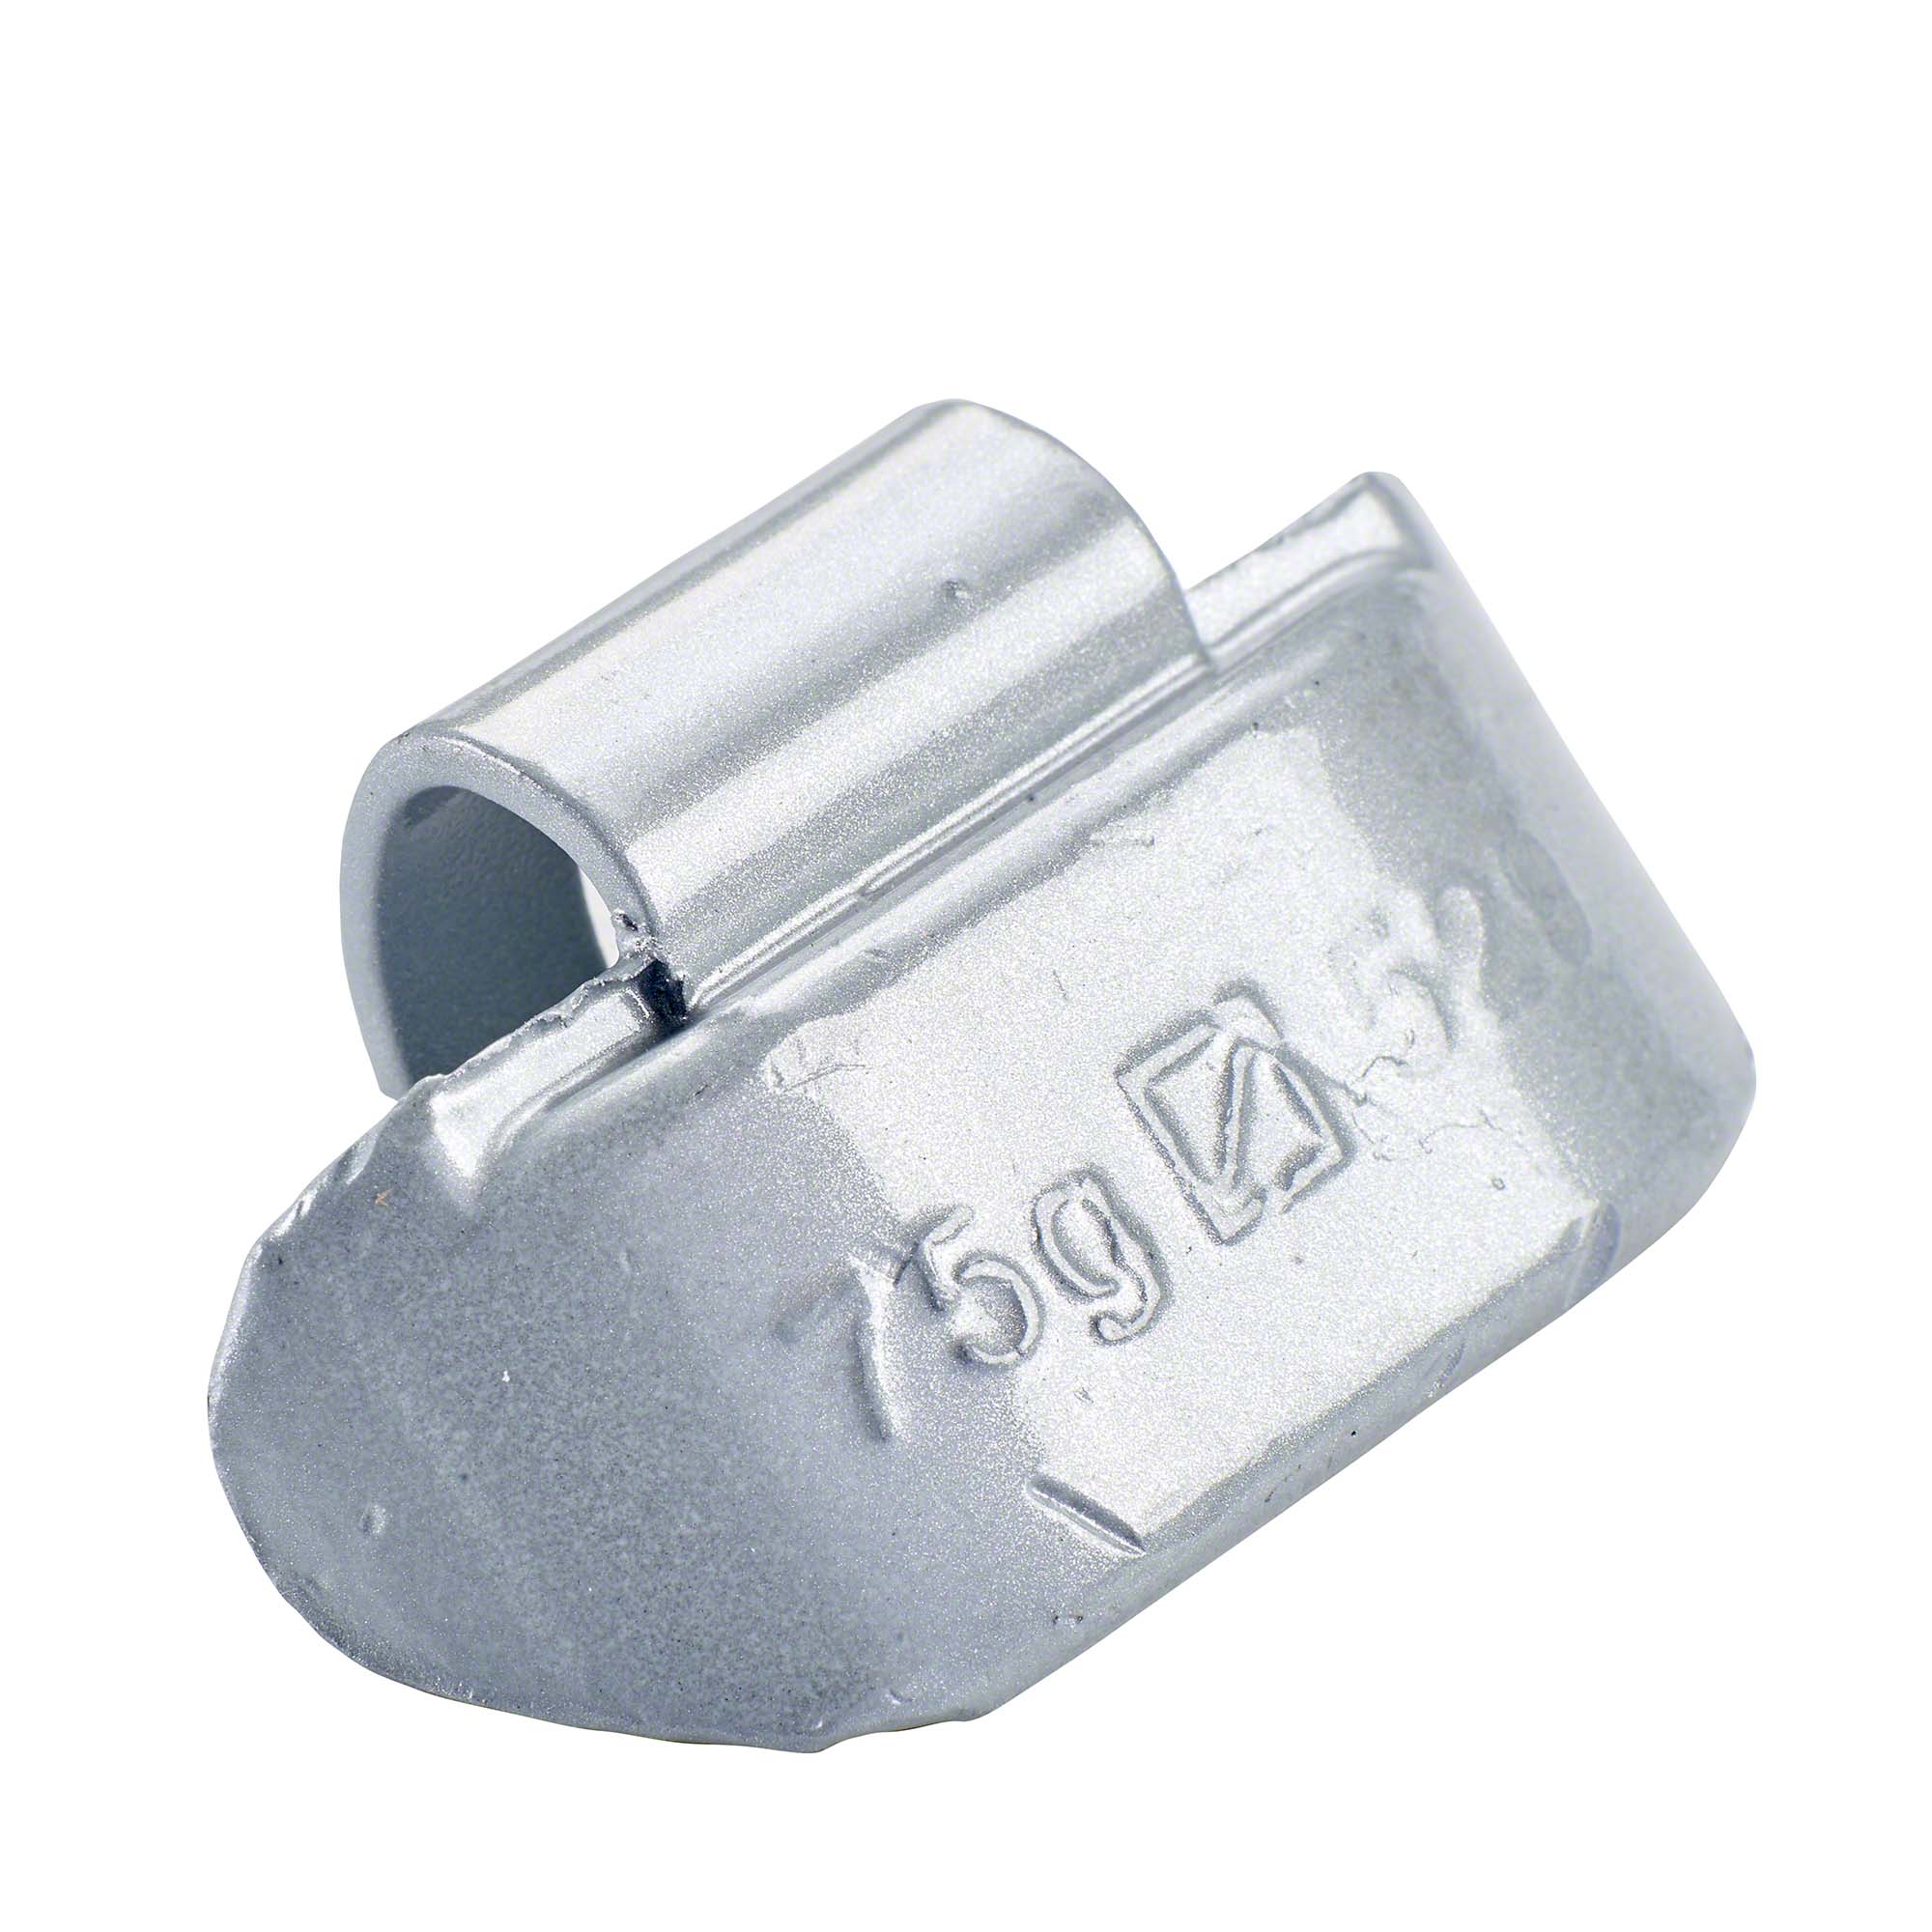 peso a molla - Typ 529, 75 g, piombo, argento